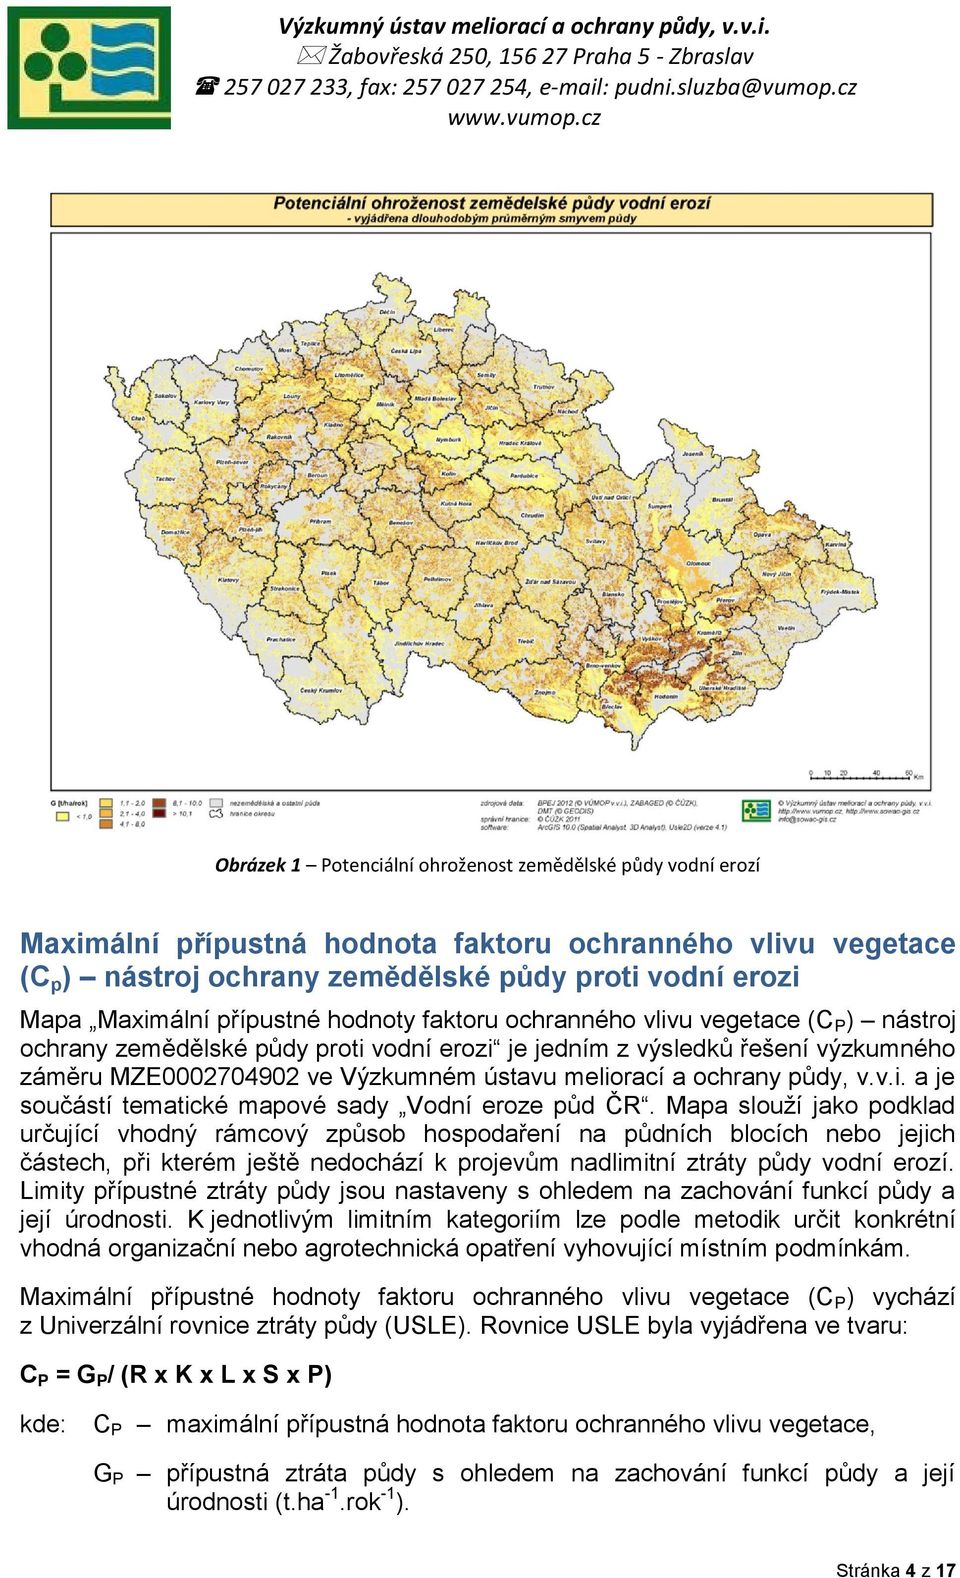 a ochrany půdy, v.v.i. a je součástí tematické mapové sady Vodní eroze půd ČR.